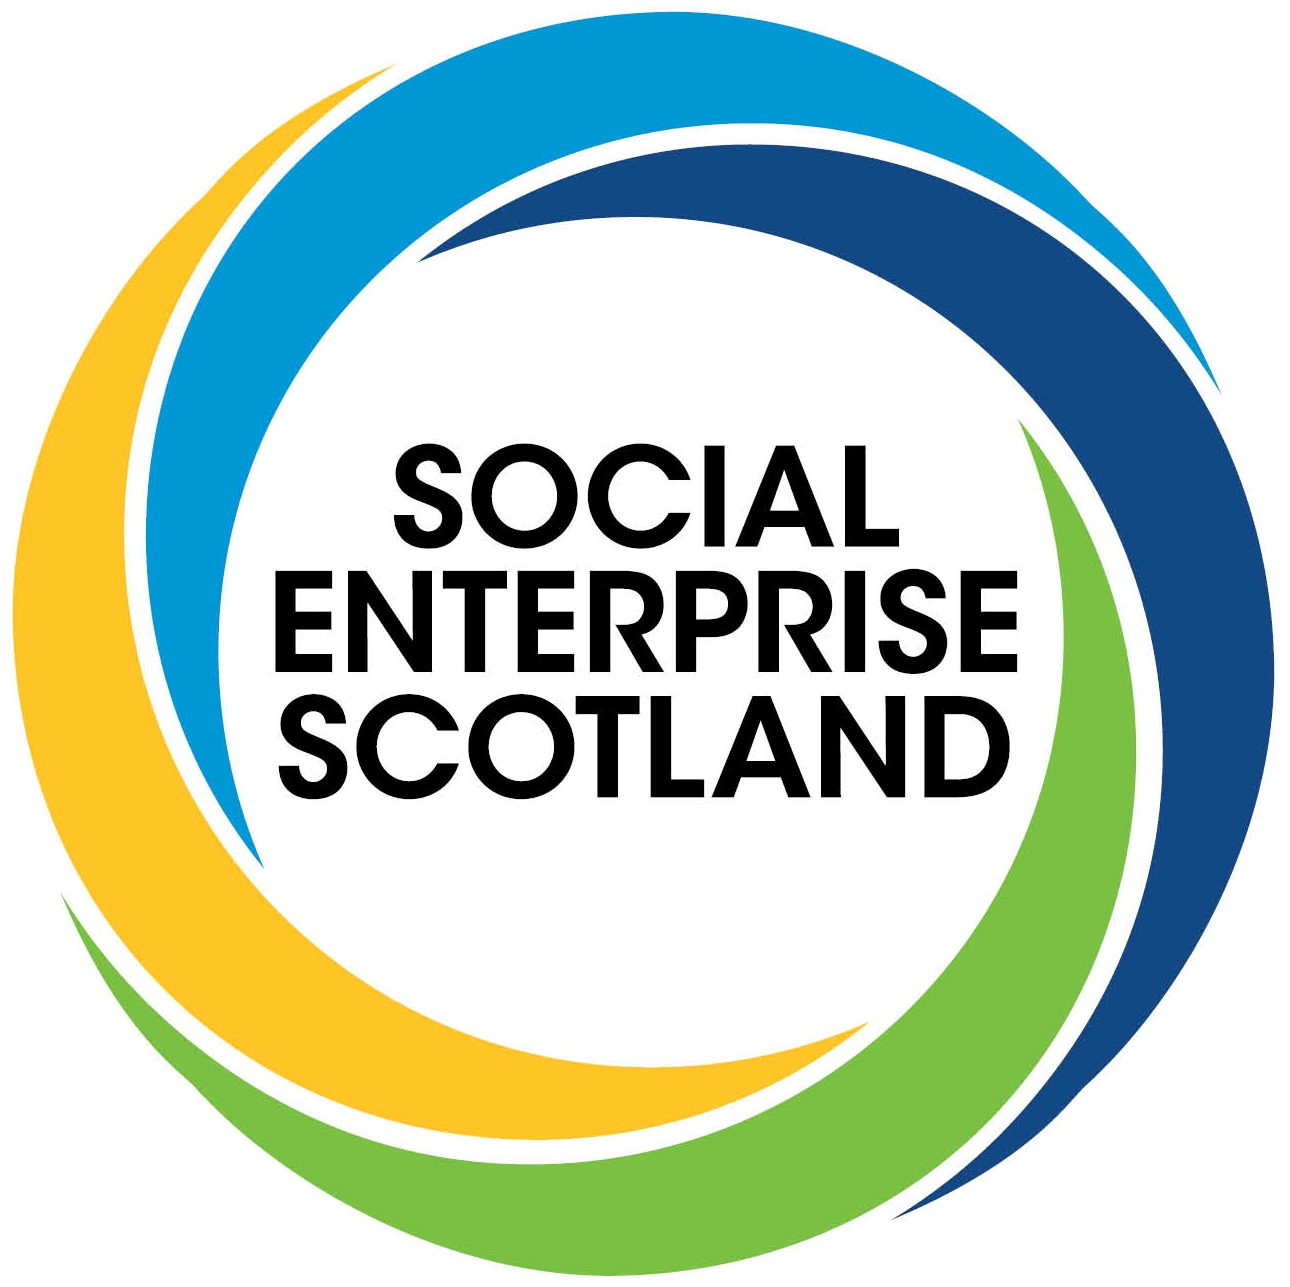 Social Enterprise Scotland announces ‘community conversations’ across country